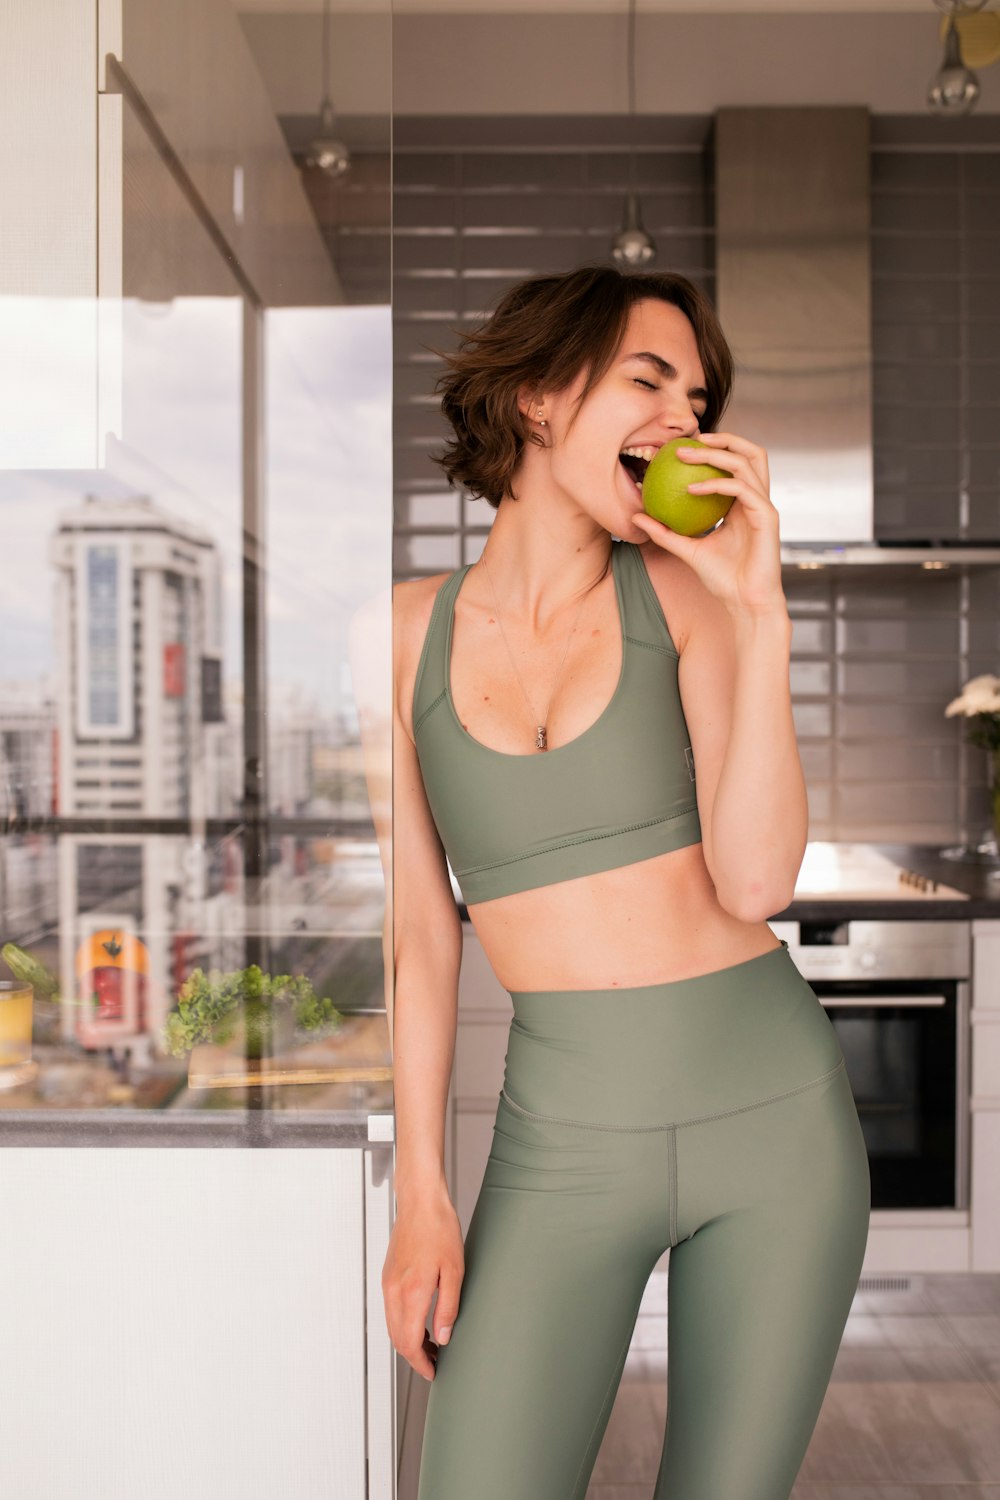 uma mulher em pé em uma cozinha segurando uma maçã verde